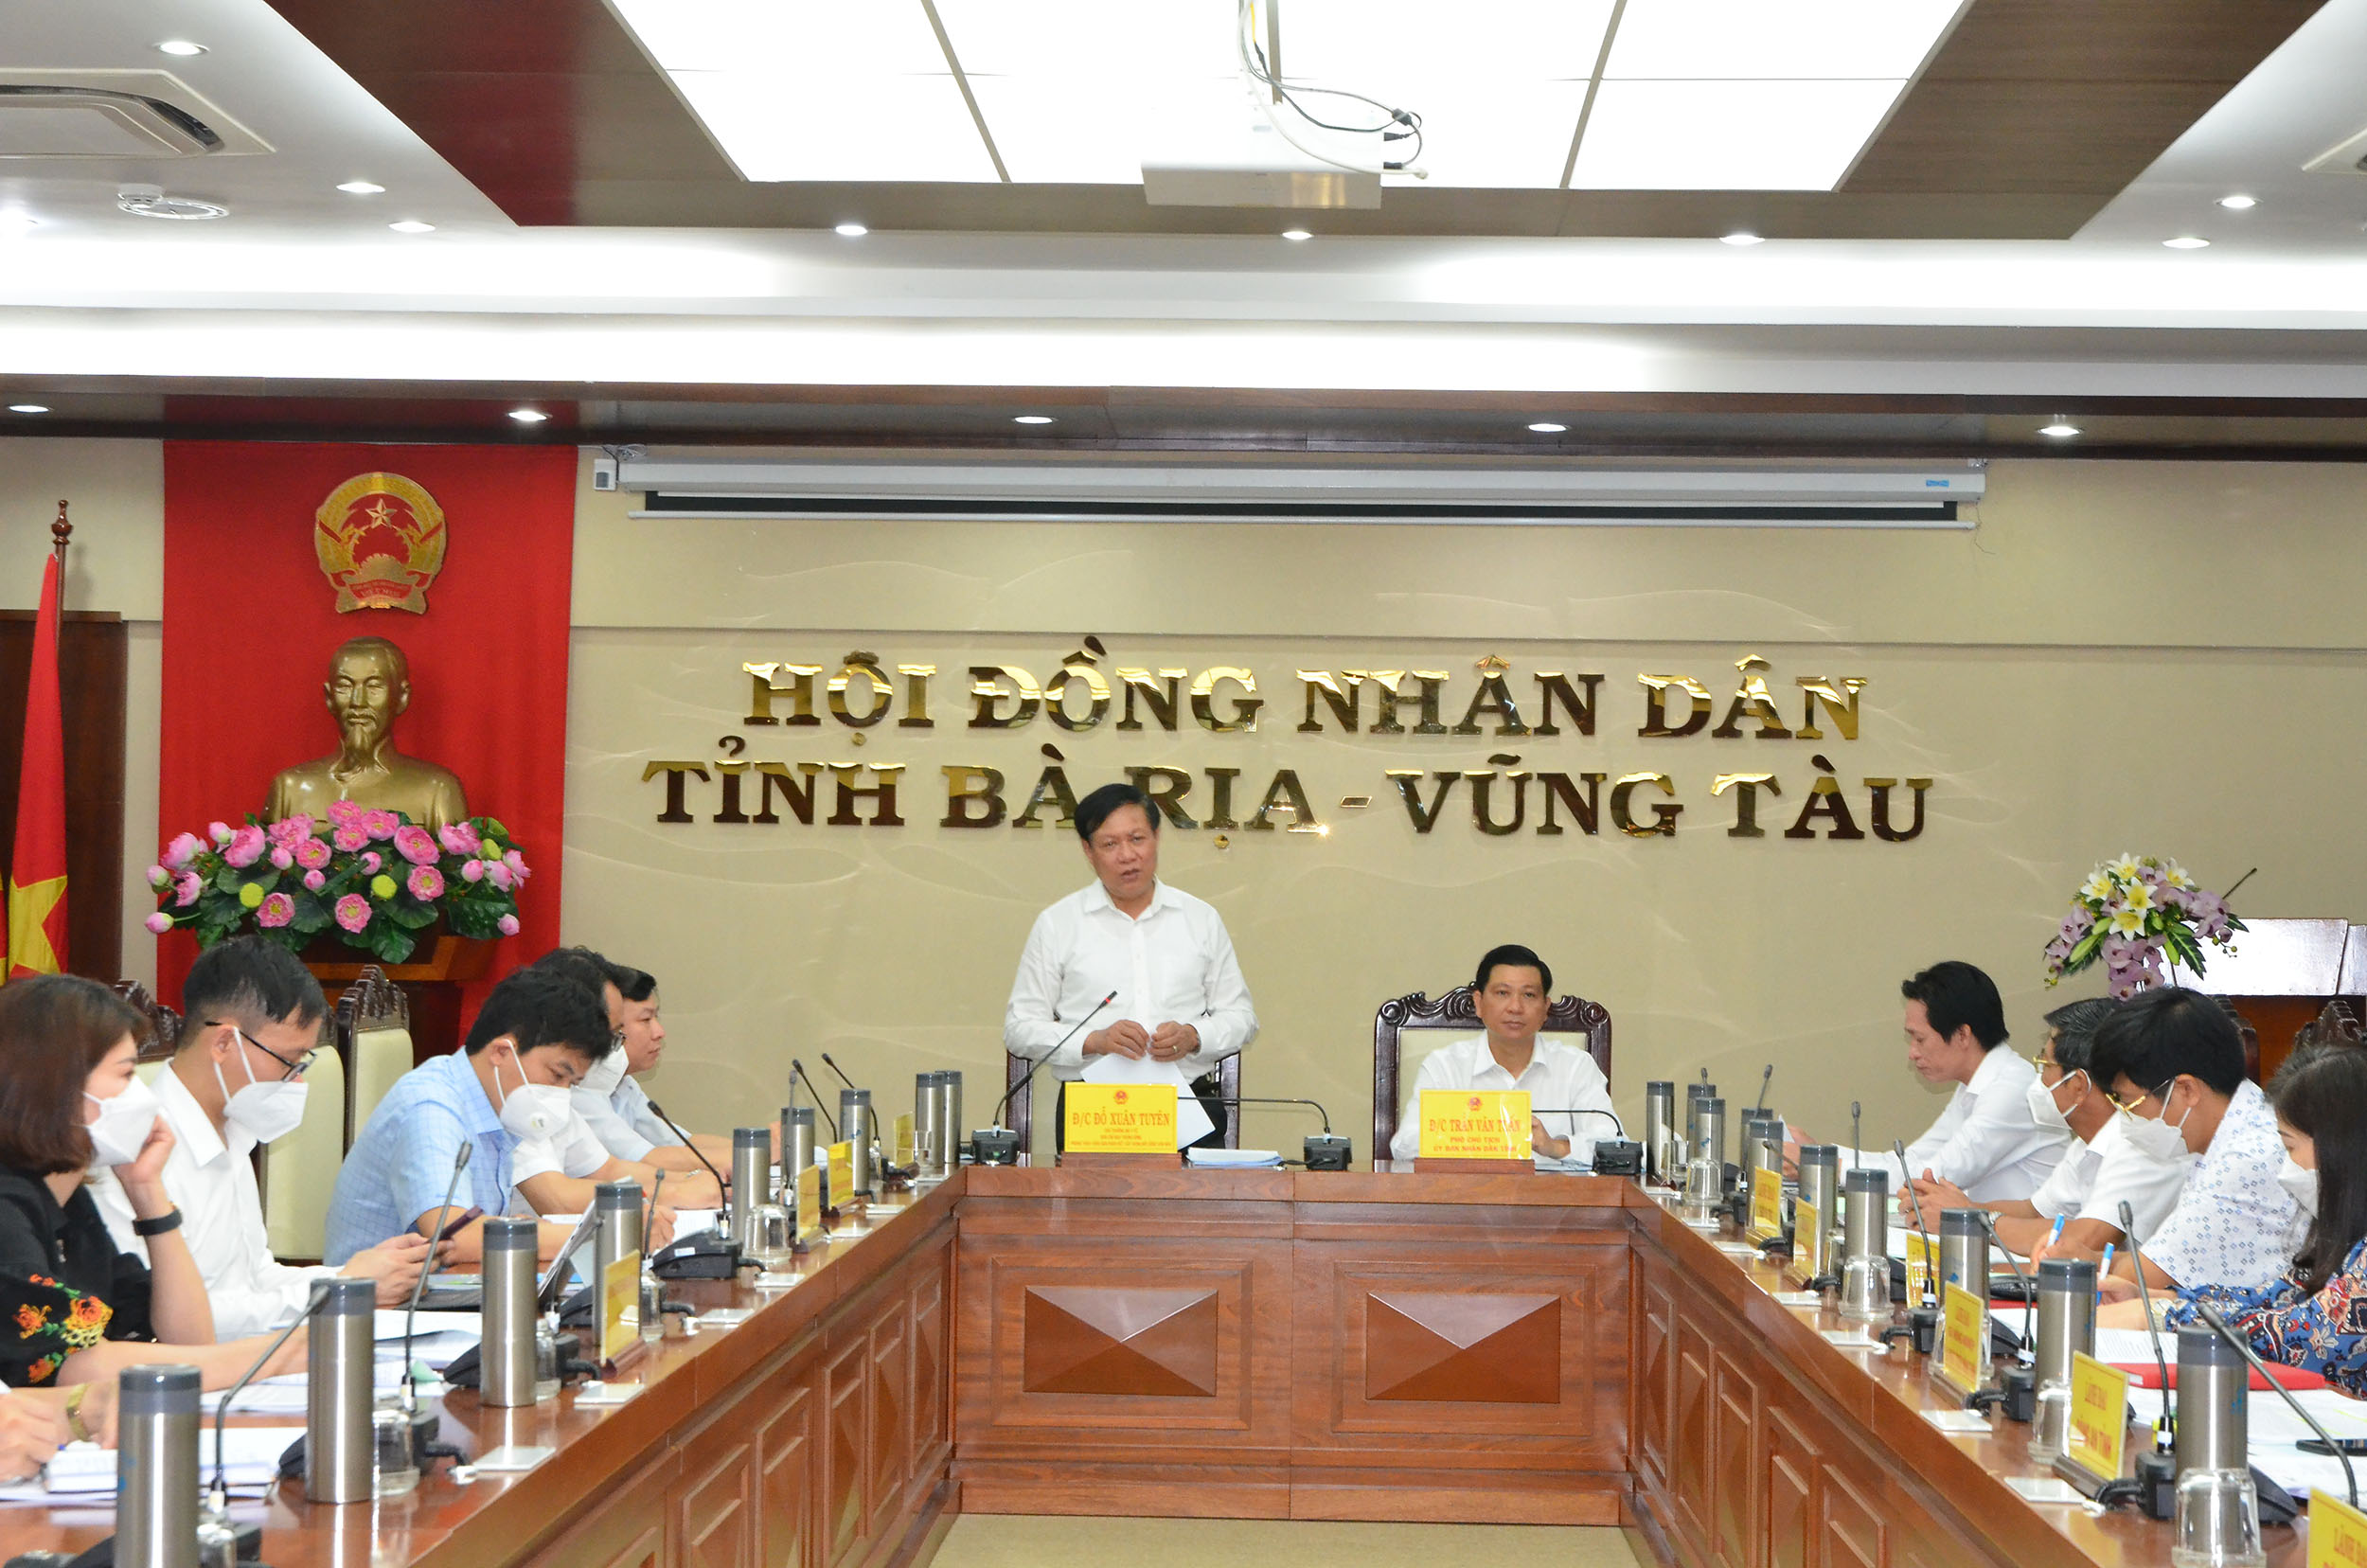 Ông Đỗ Xuân Tuyên, Thứ trưởng Bộ Y tế, Trưởng Đoàn Kiểm tra phát biểu chỉ đạo tại buổi làm việc với UBND tỉnh.